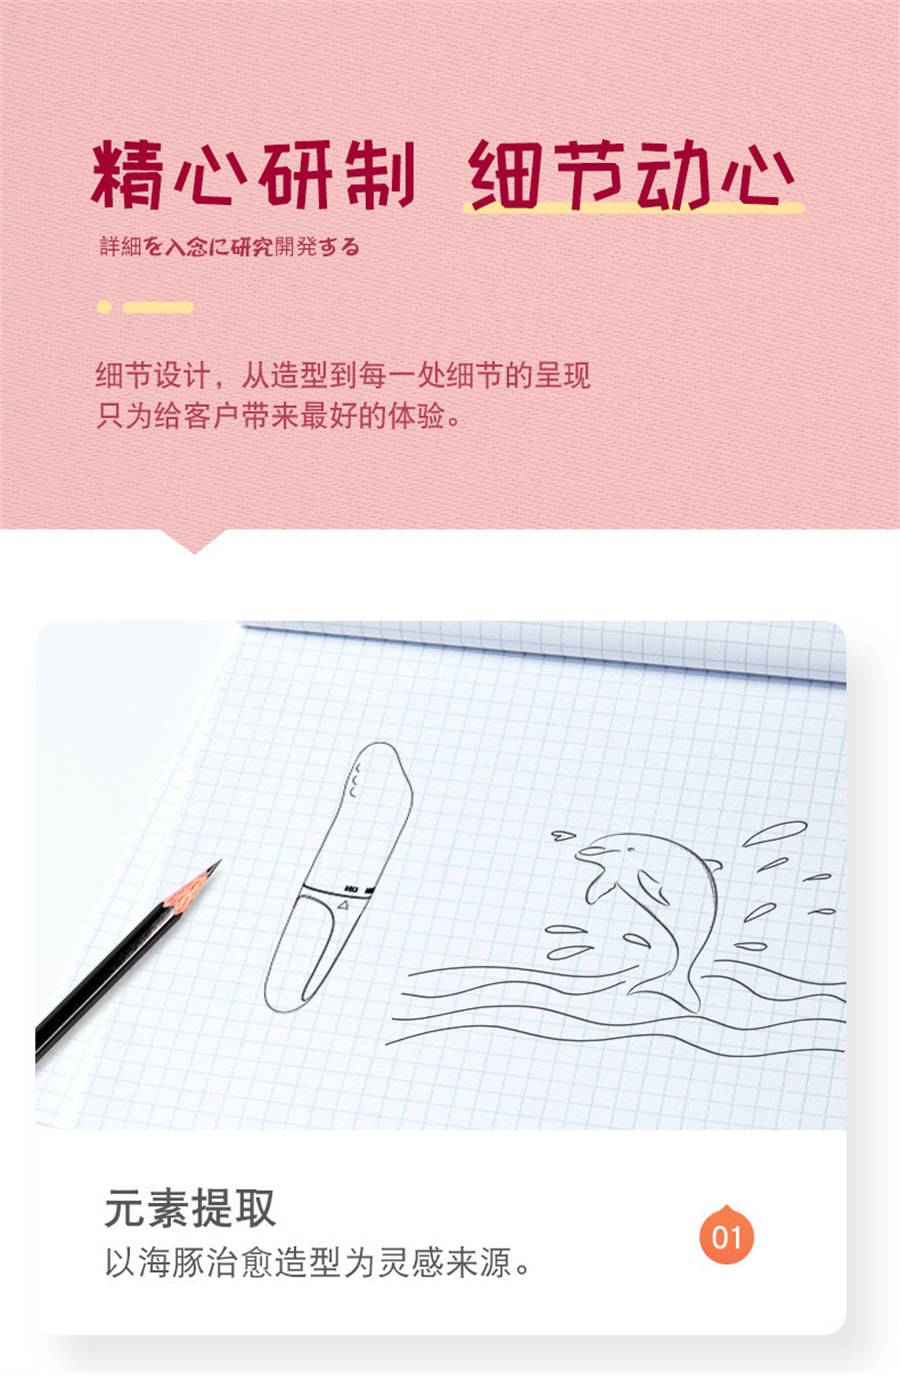 【中国直邮】 来乐 迷你小海豚跳蛋震动按摩棒 女用自慰器振动棒成人情趣性用品情趣